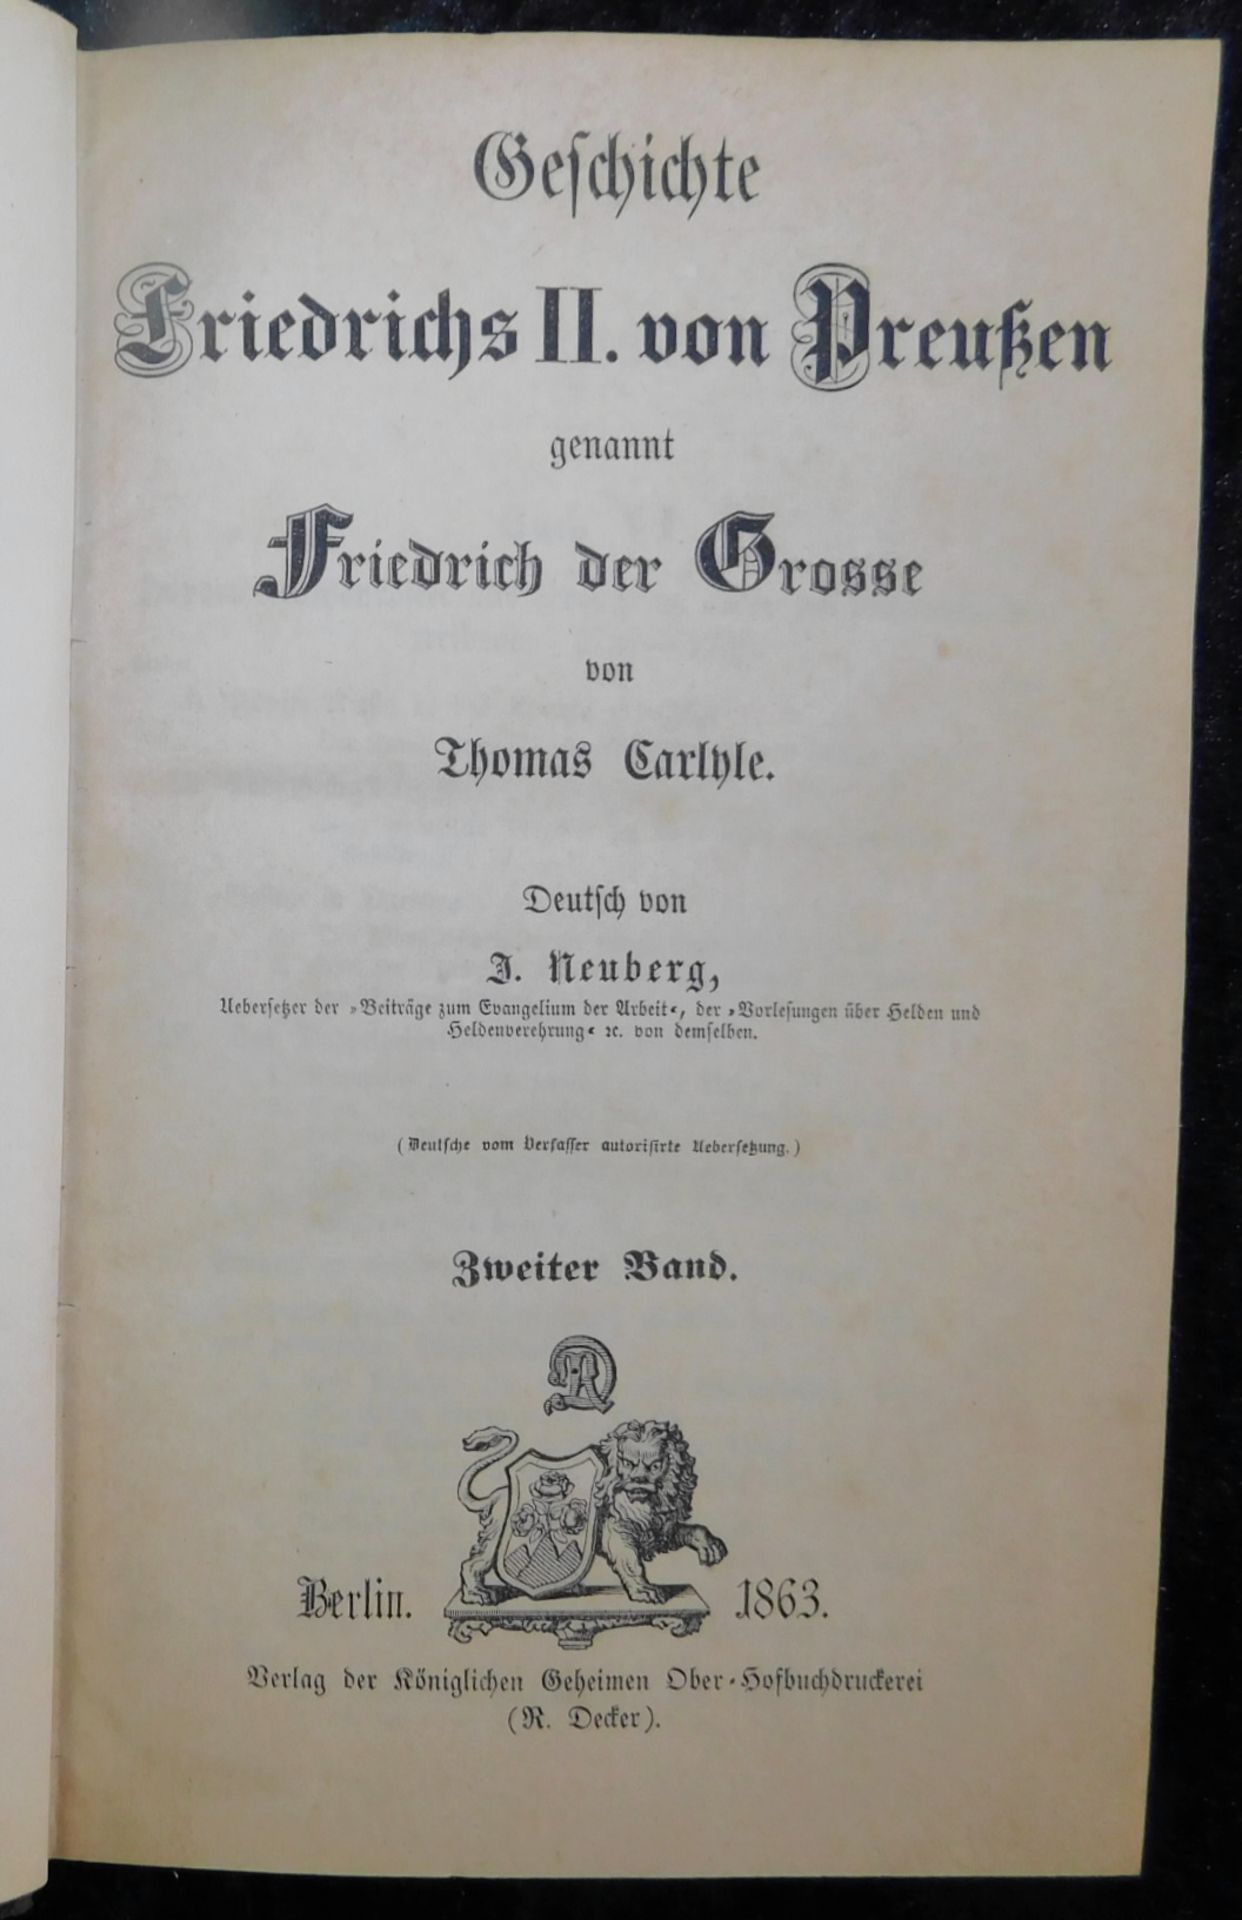 Friedrich der Große, In 5 Bänden, Thomas Carlyle, Deutsch von J. Neuberg, Verlag R. Decker, Be - Image 3 of 6